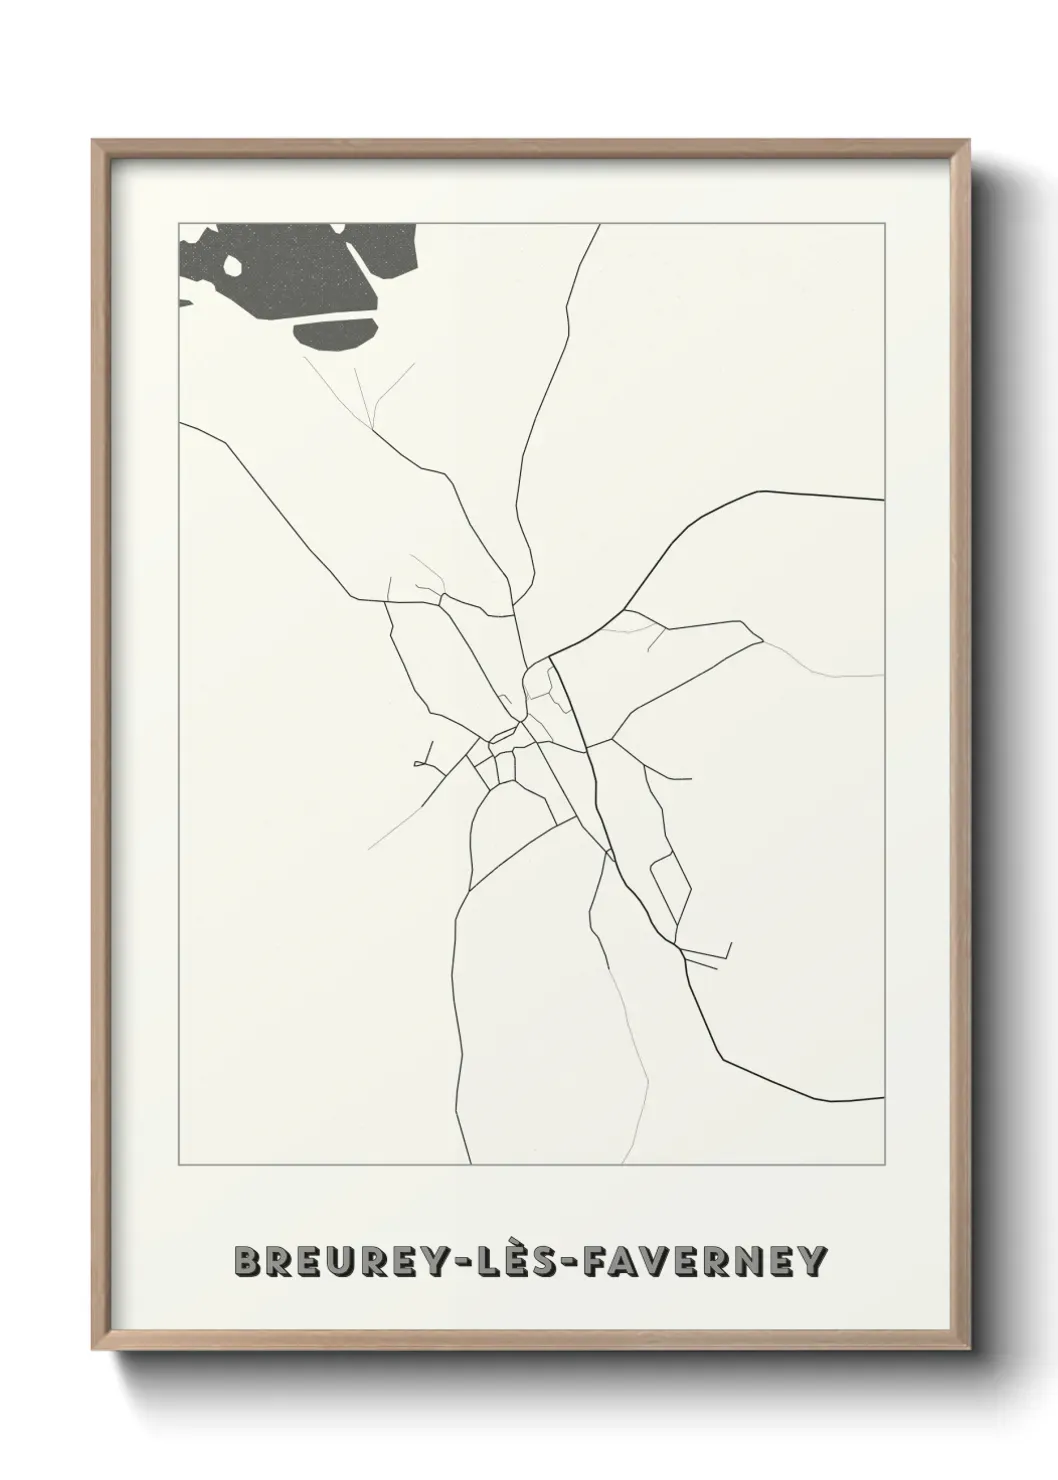 Un poster carteBreurey-lès-Faverney